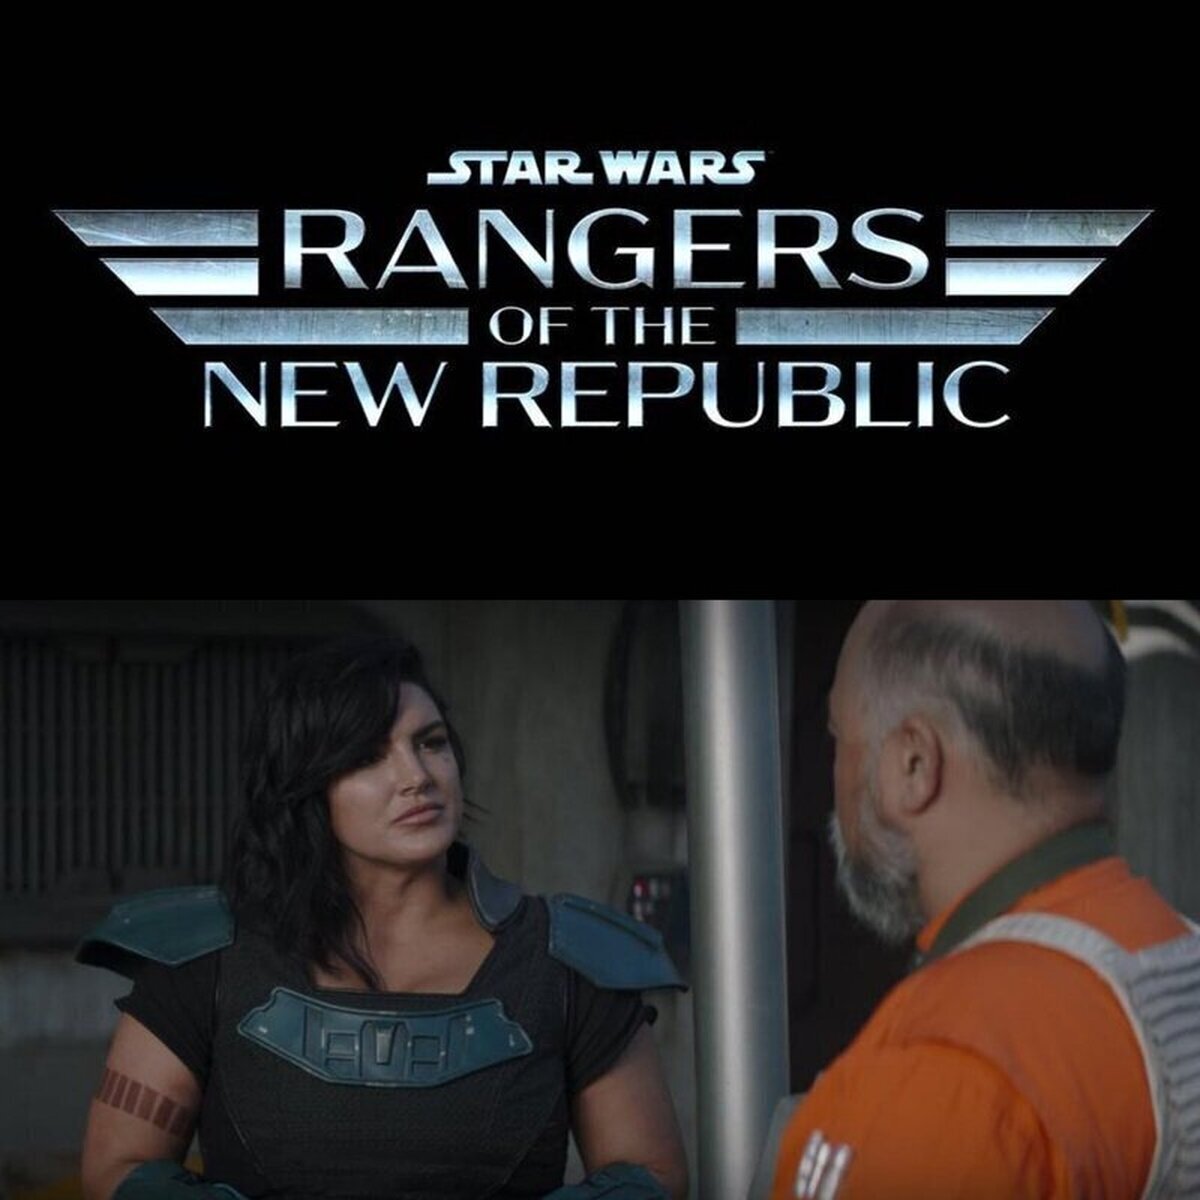 Se ha confirmado la cancelación del serie de Star Wars: Rangers of the New Republic, algo obvio porque se centraba en gran parte en Cara Dune, actriz que ya no está en Disney